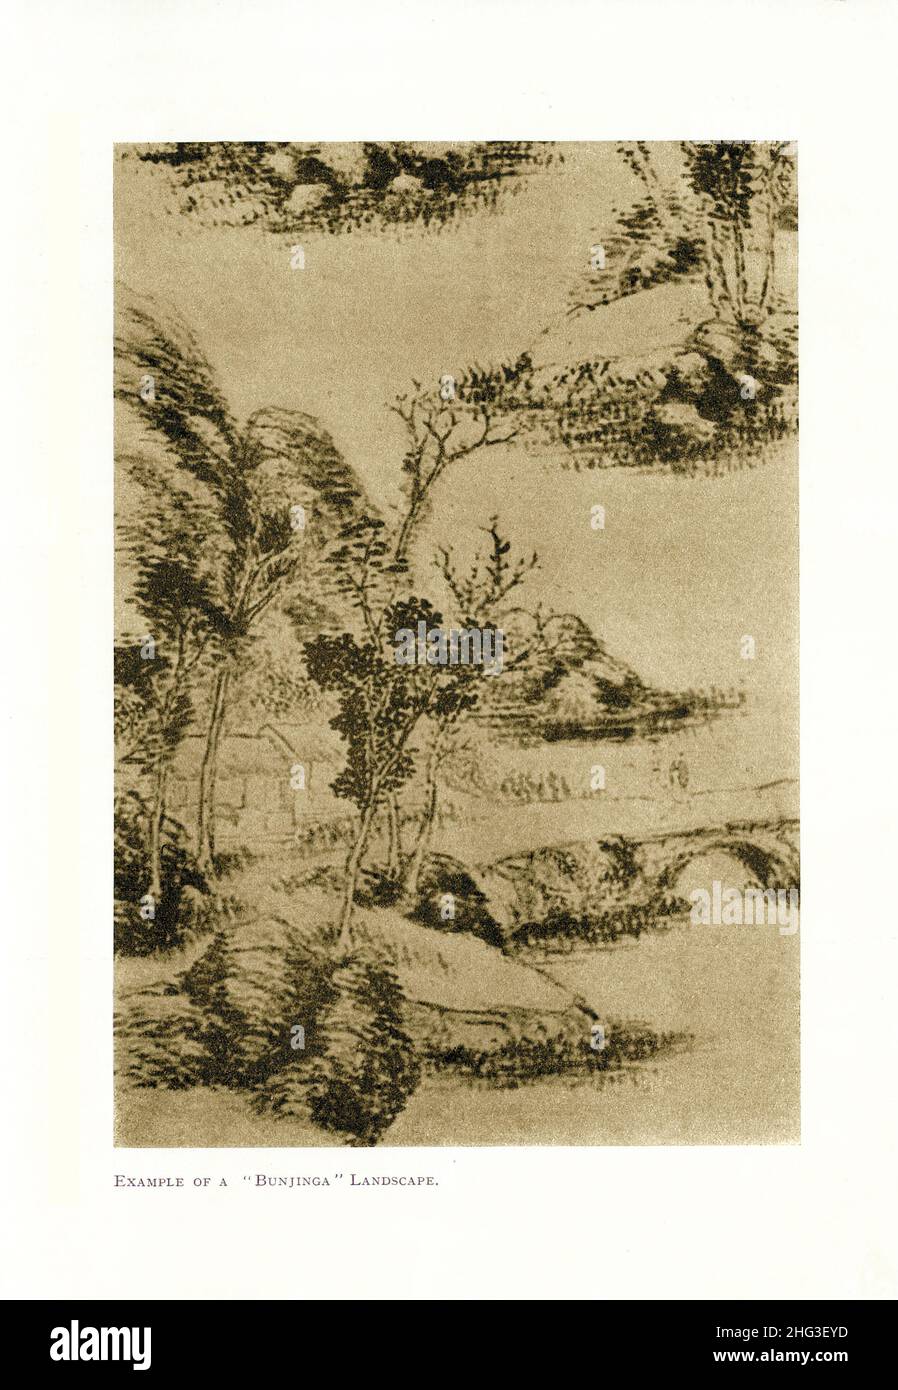 Alte chinesische Malerei: Beispiel einer 'Bunjinga' Landschaft. Reproduktion der Buchillustration von 1912 Nanga (japanische Malerei) 'Südliche Malerei', Stockfoto